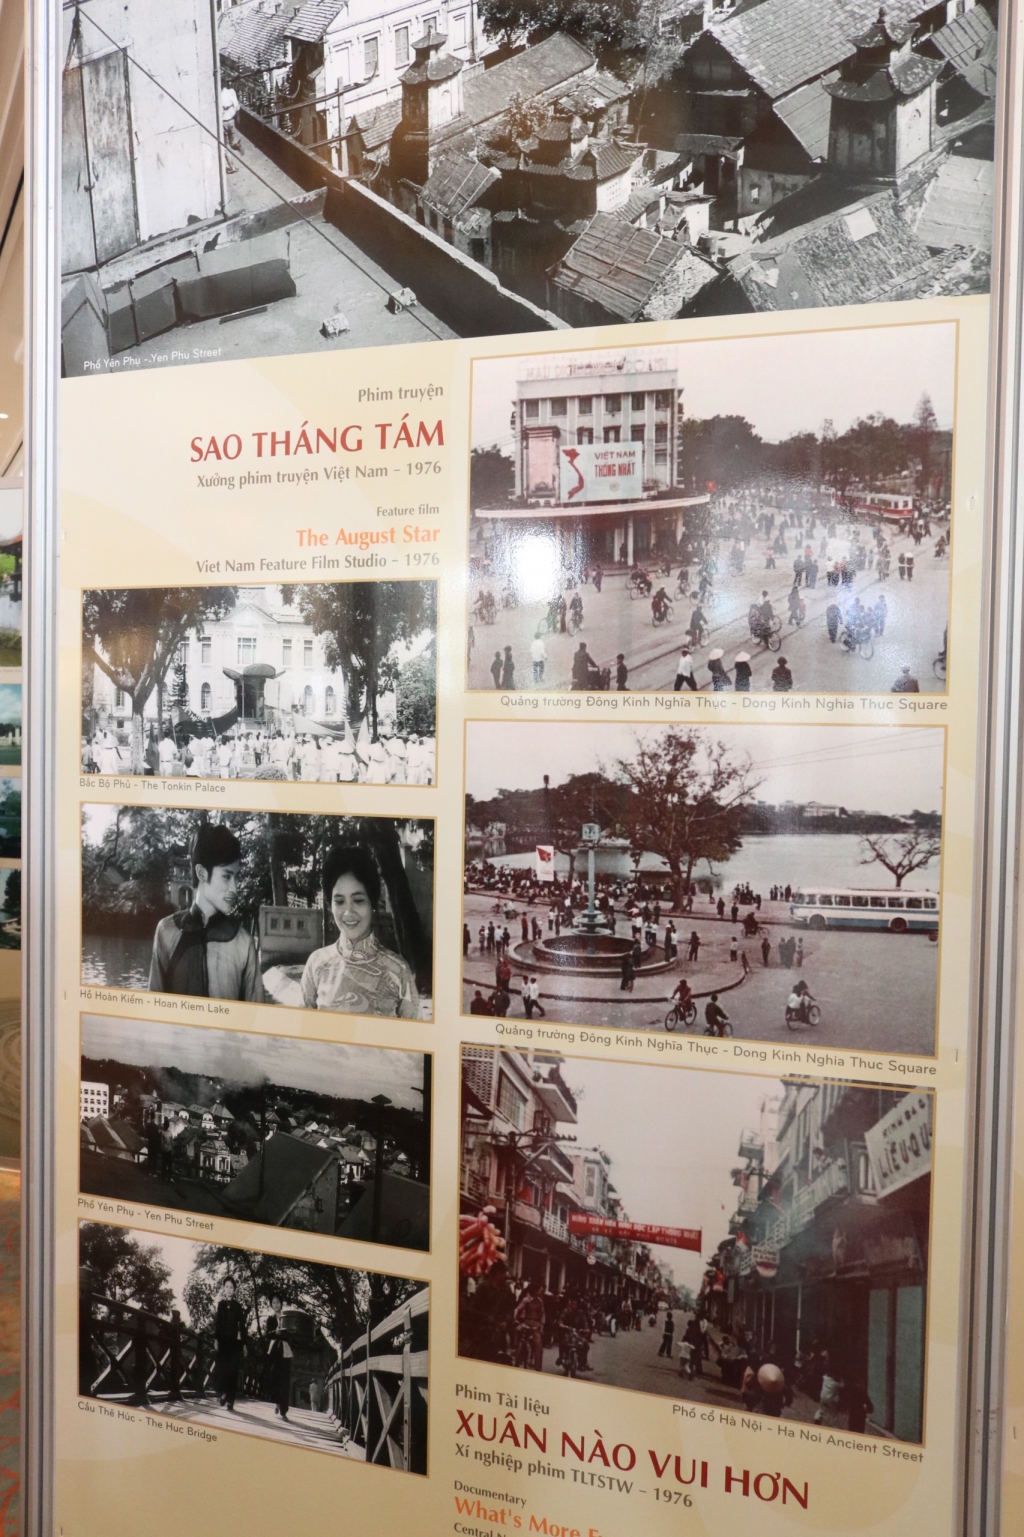 Khán giả Hà Nội và quan khách say sưa chiêm ngưỡng triển lãm 'Bối cảnh quay phim là các di tích, di sản văn hóa của Hà Nội'